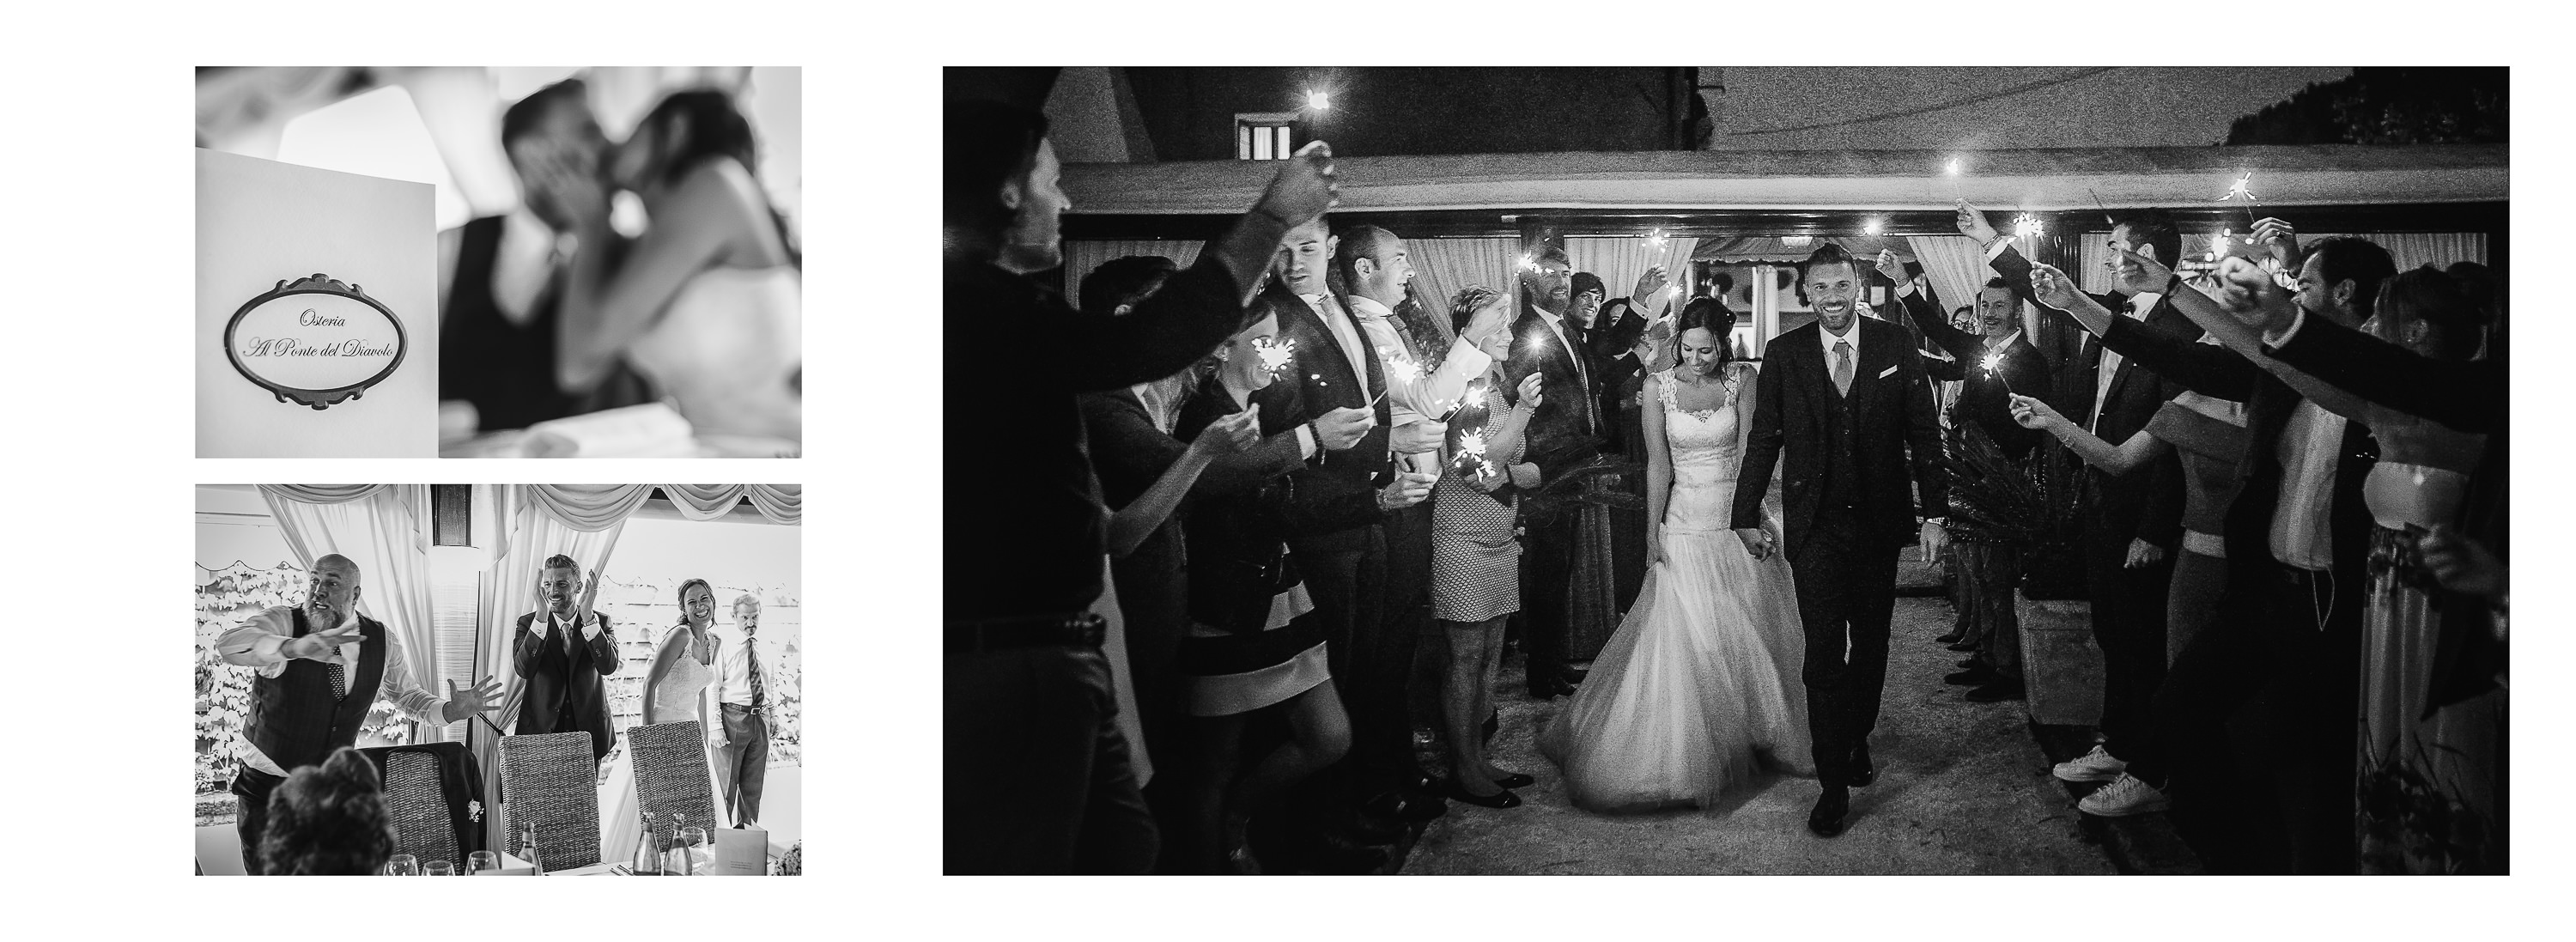 Matrimonio in laguna di Venezia a Torcello, Osteria Ponte del Diavolo. Foto degli sposi nello scenario di Torcello. Il Blog di Michelino Studio, Fotografo di matrimonio in Veneto.